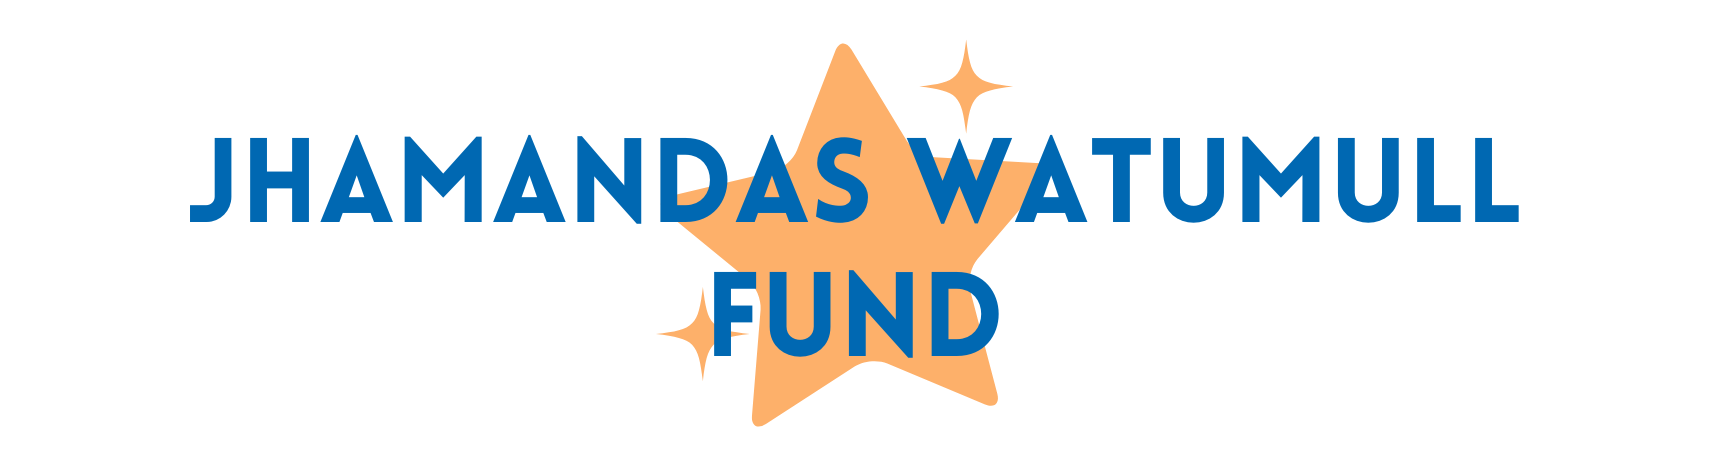 Jhamandas Watumull Fund